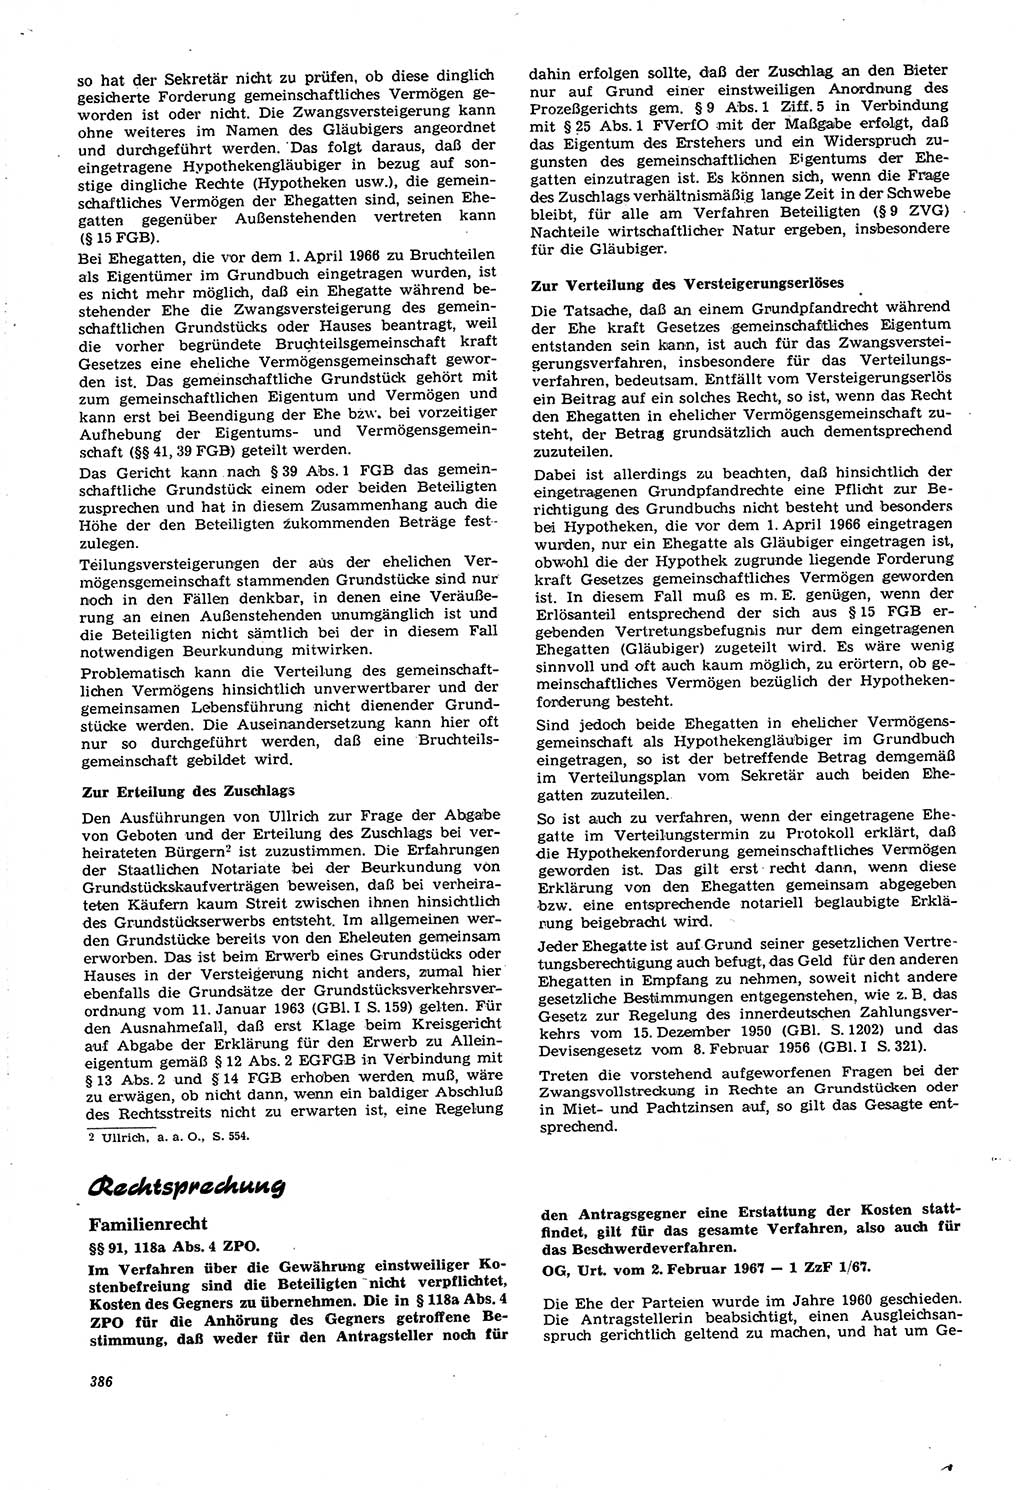 Neue Justiz (NJ), Zeitschrift für Recht und Rechtswissenschaft [Deutsche Demokratische Republik (DDR)], 21. Jahrgang 1967, Seite 386 (NJ DDR 1967, S. 386)